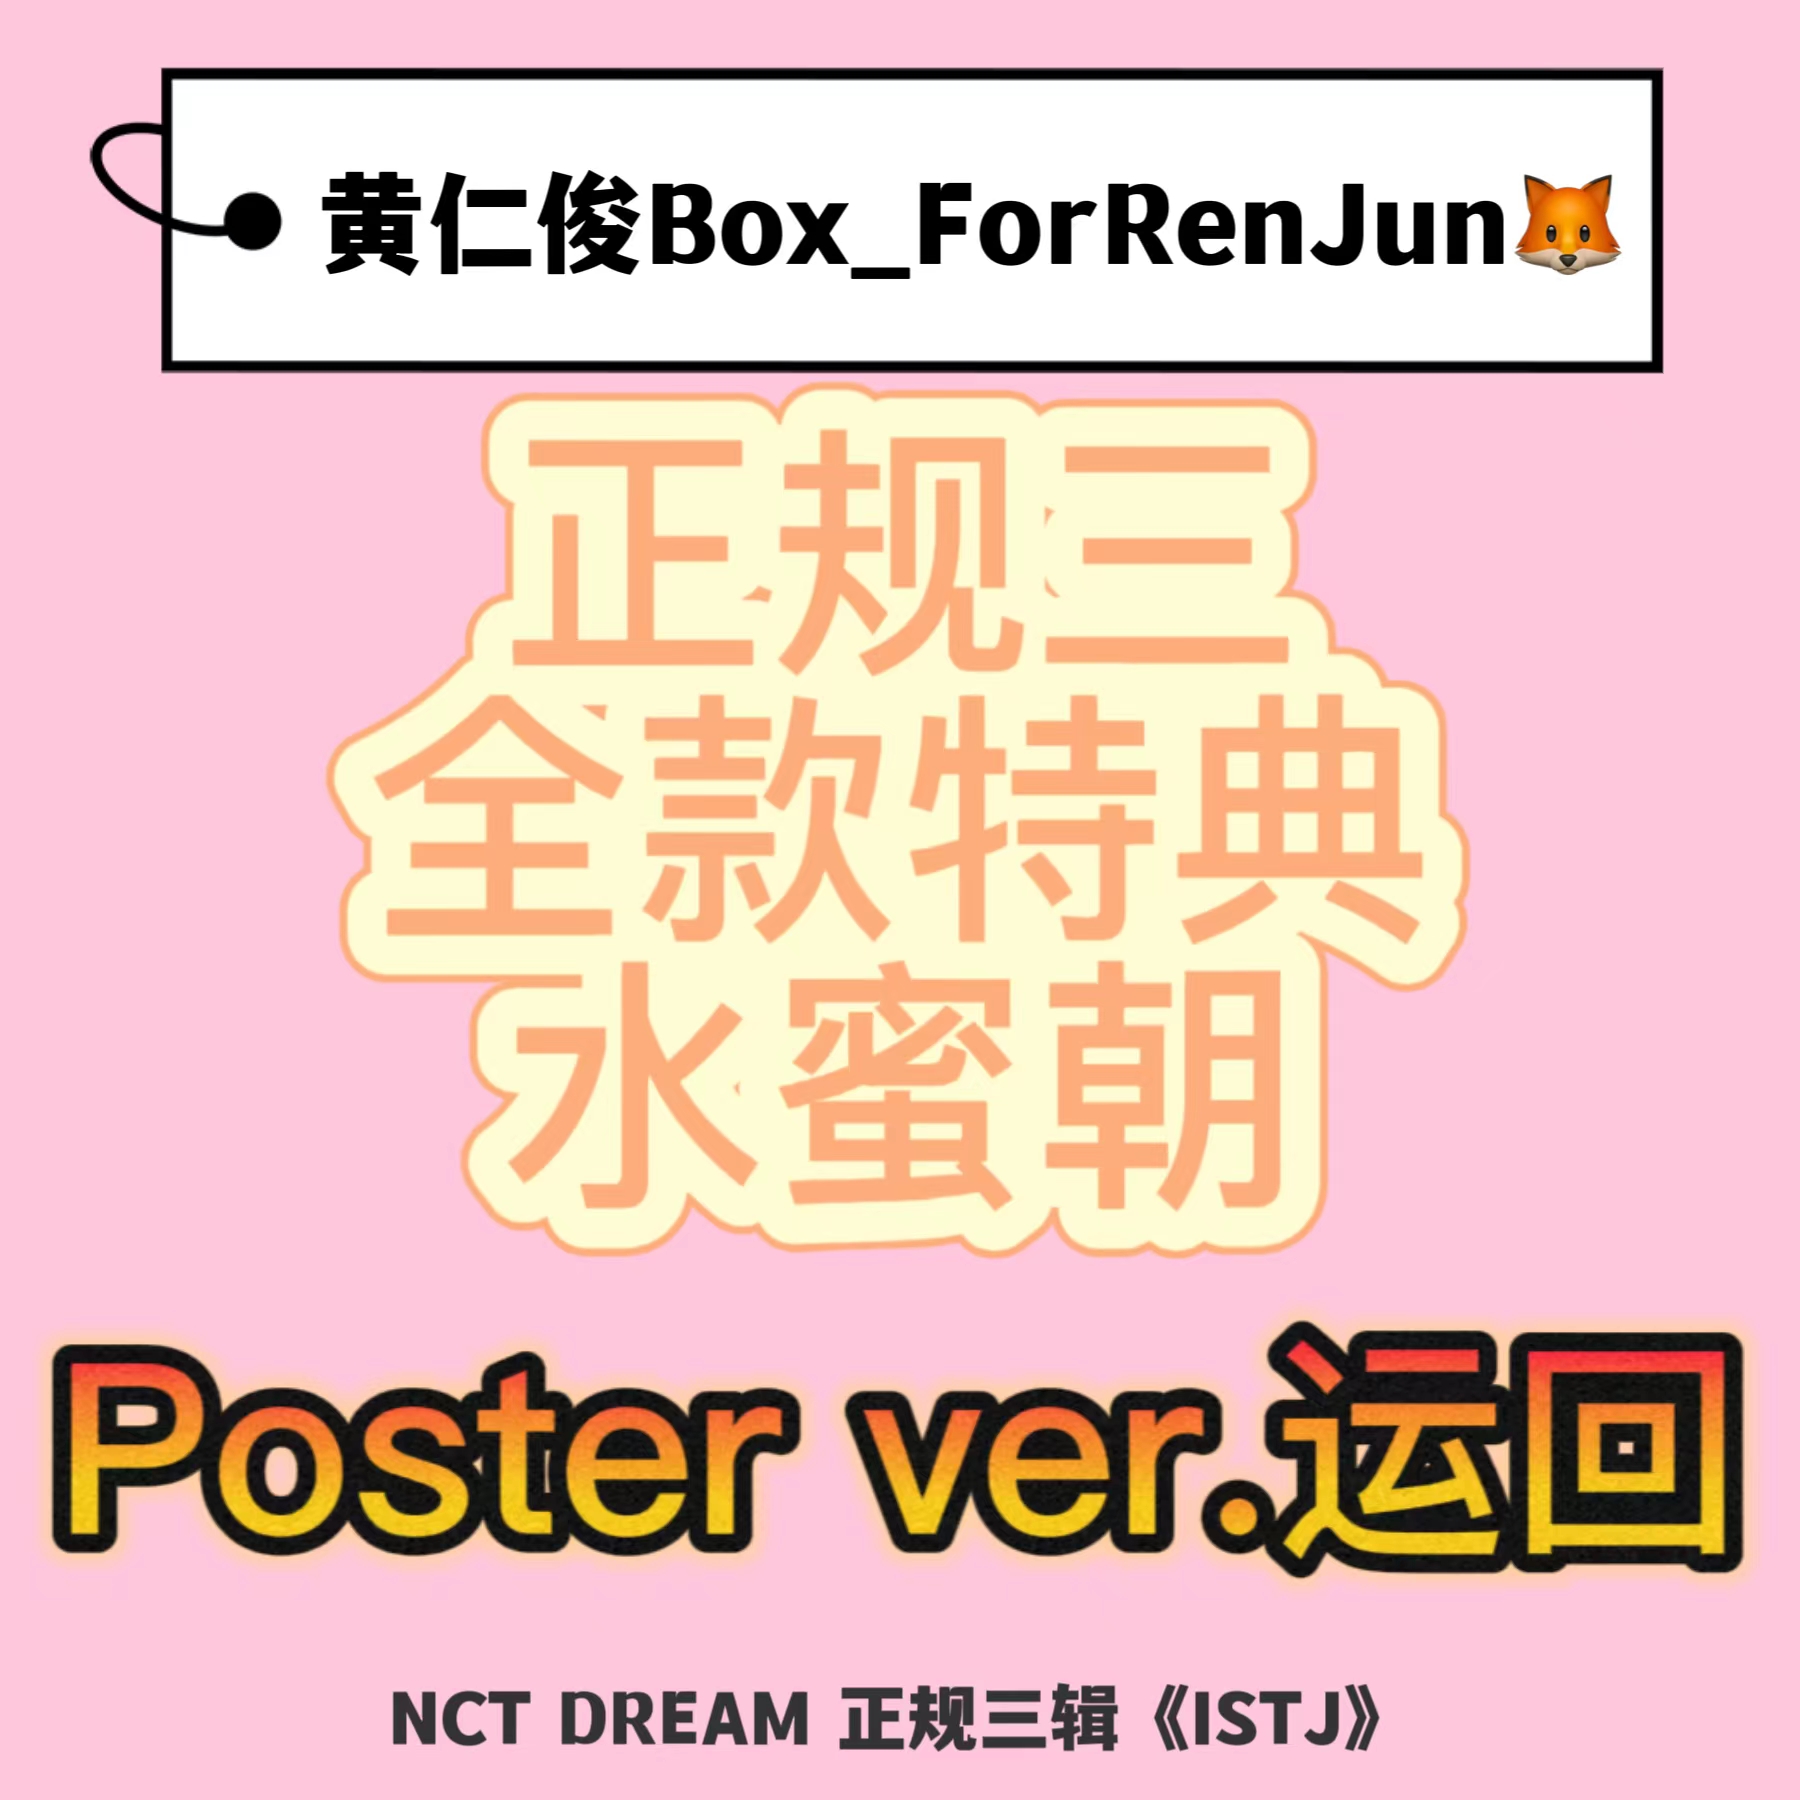 [全款 水蜜朝 特典专] [Ktown4u Special Gift] NCT DREAM - 正规3辑 [ISTJ] (Poster Ver.) (随机版本)_黄仁俊吧RenJunBar